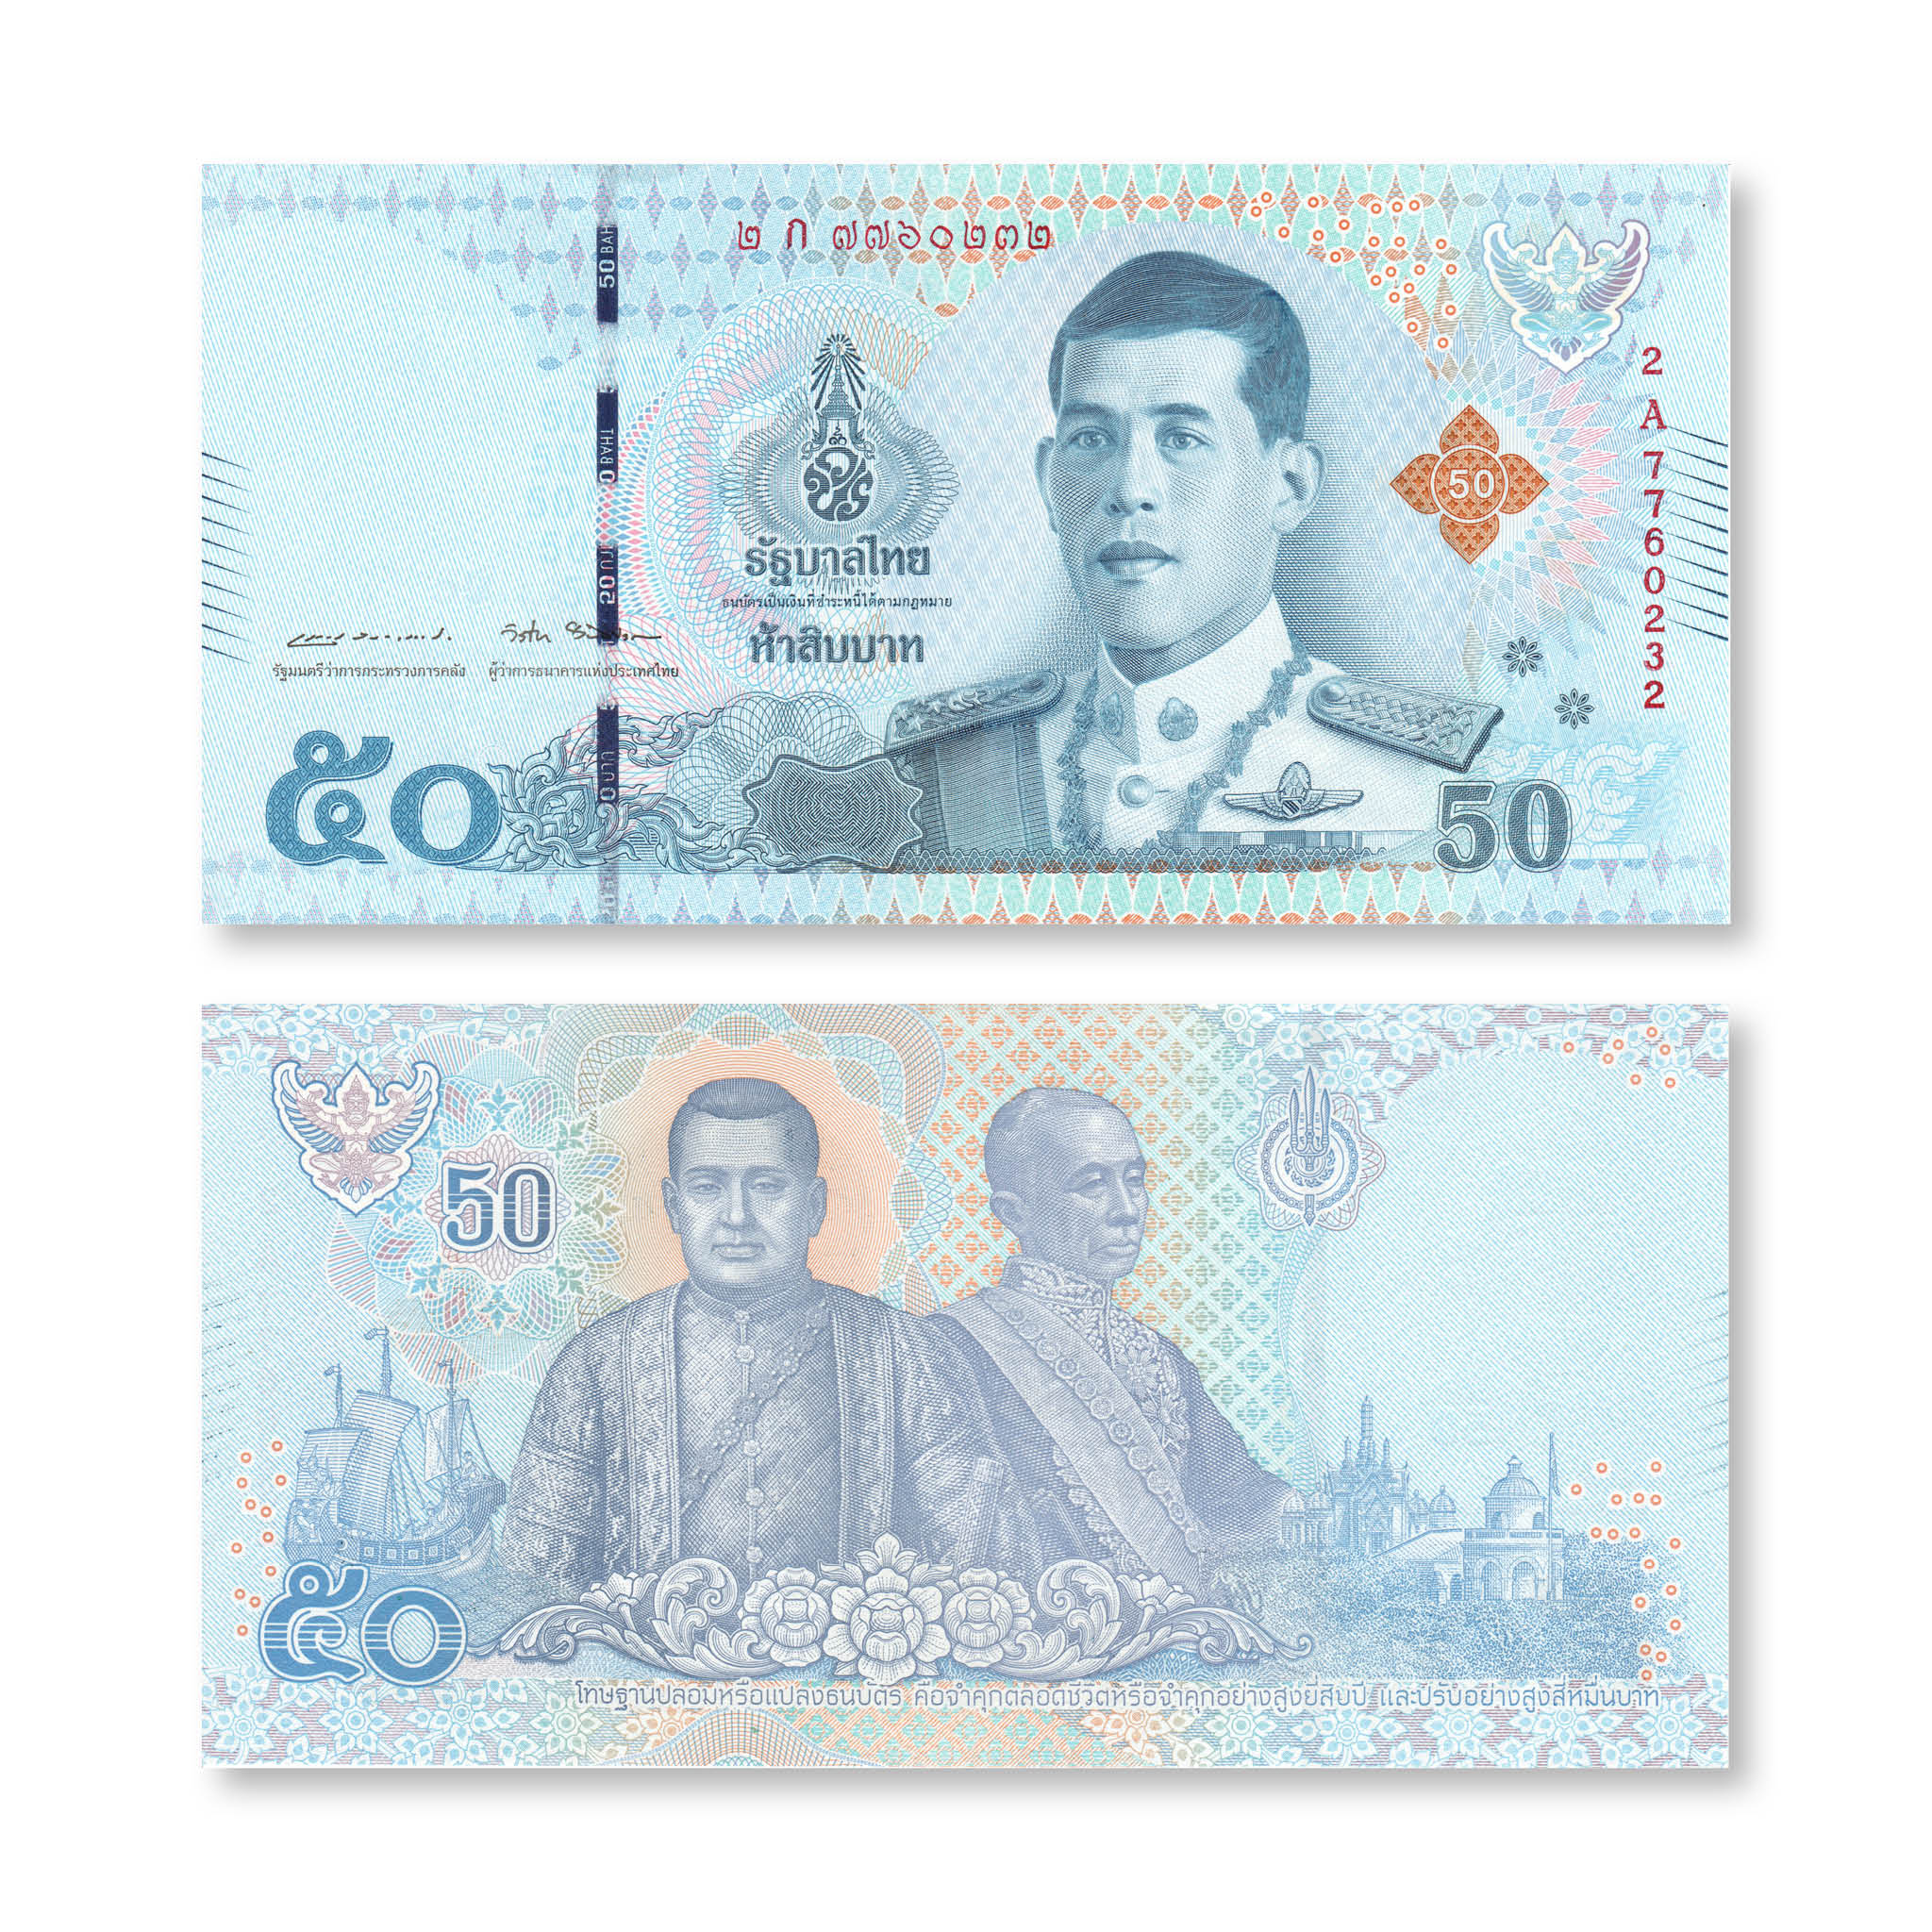 Thailand 50 Baht, 2018, B194a, P136a, UNC - Robert's World Money - World Banknotes